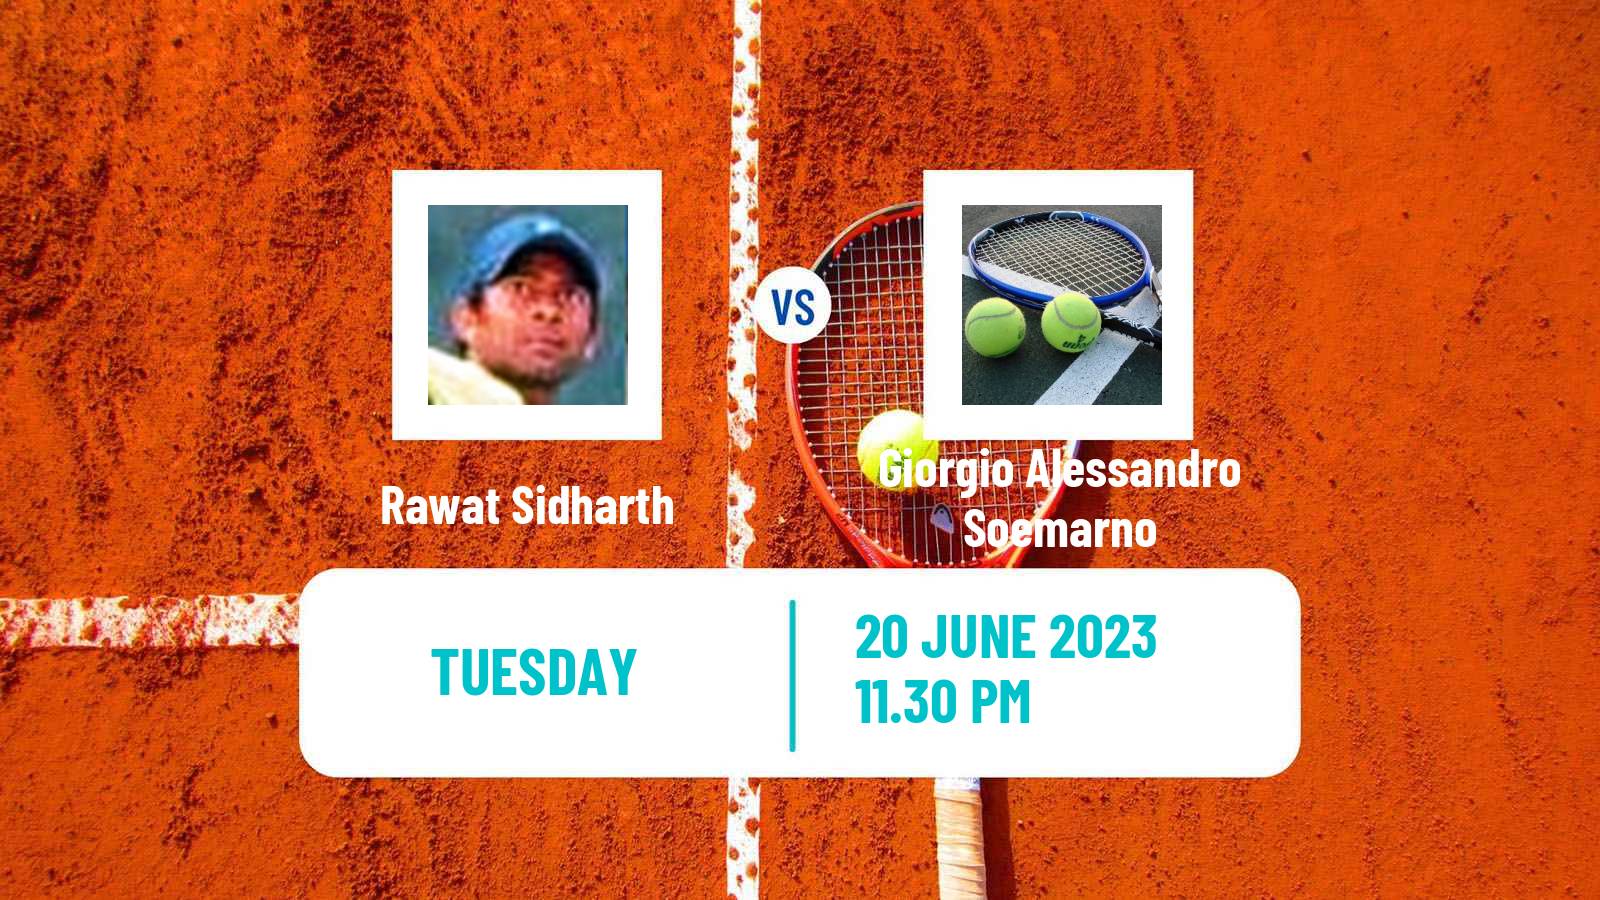 Tennis ITF M15 Jakarta 4 Men Rawat Sidharth - Giorgio Alessandro Soemarno